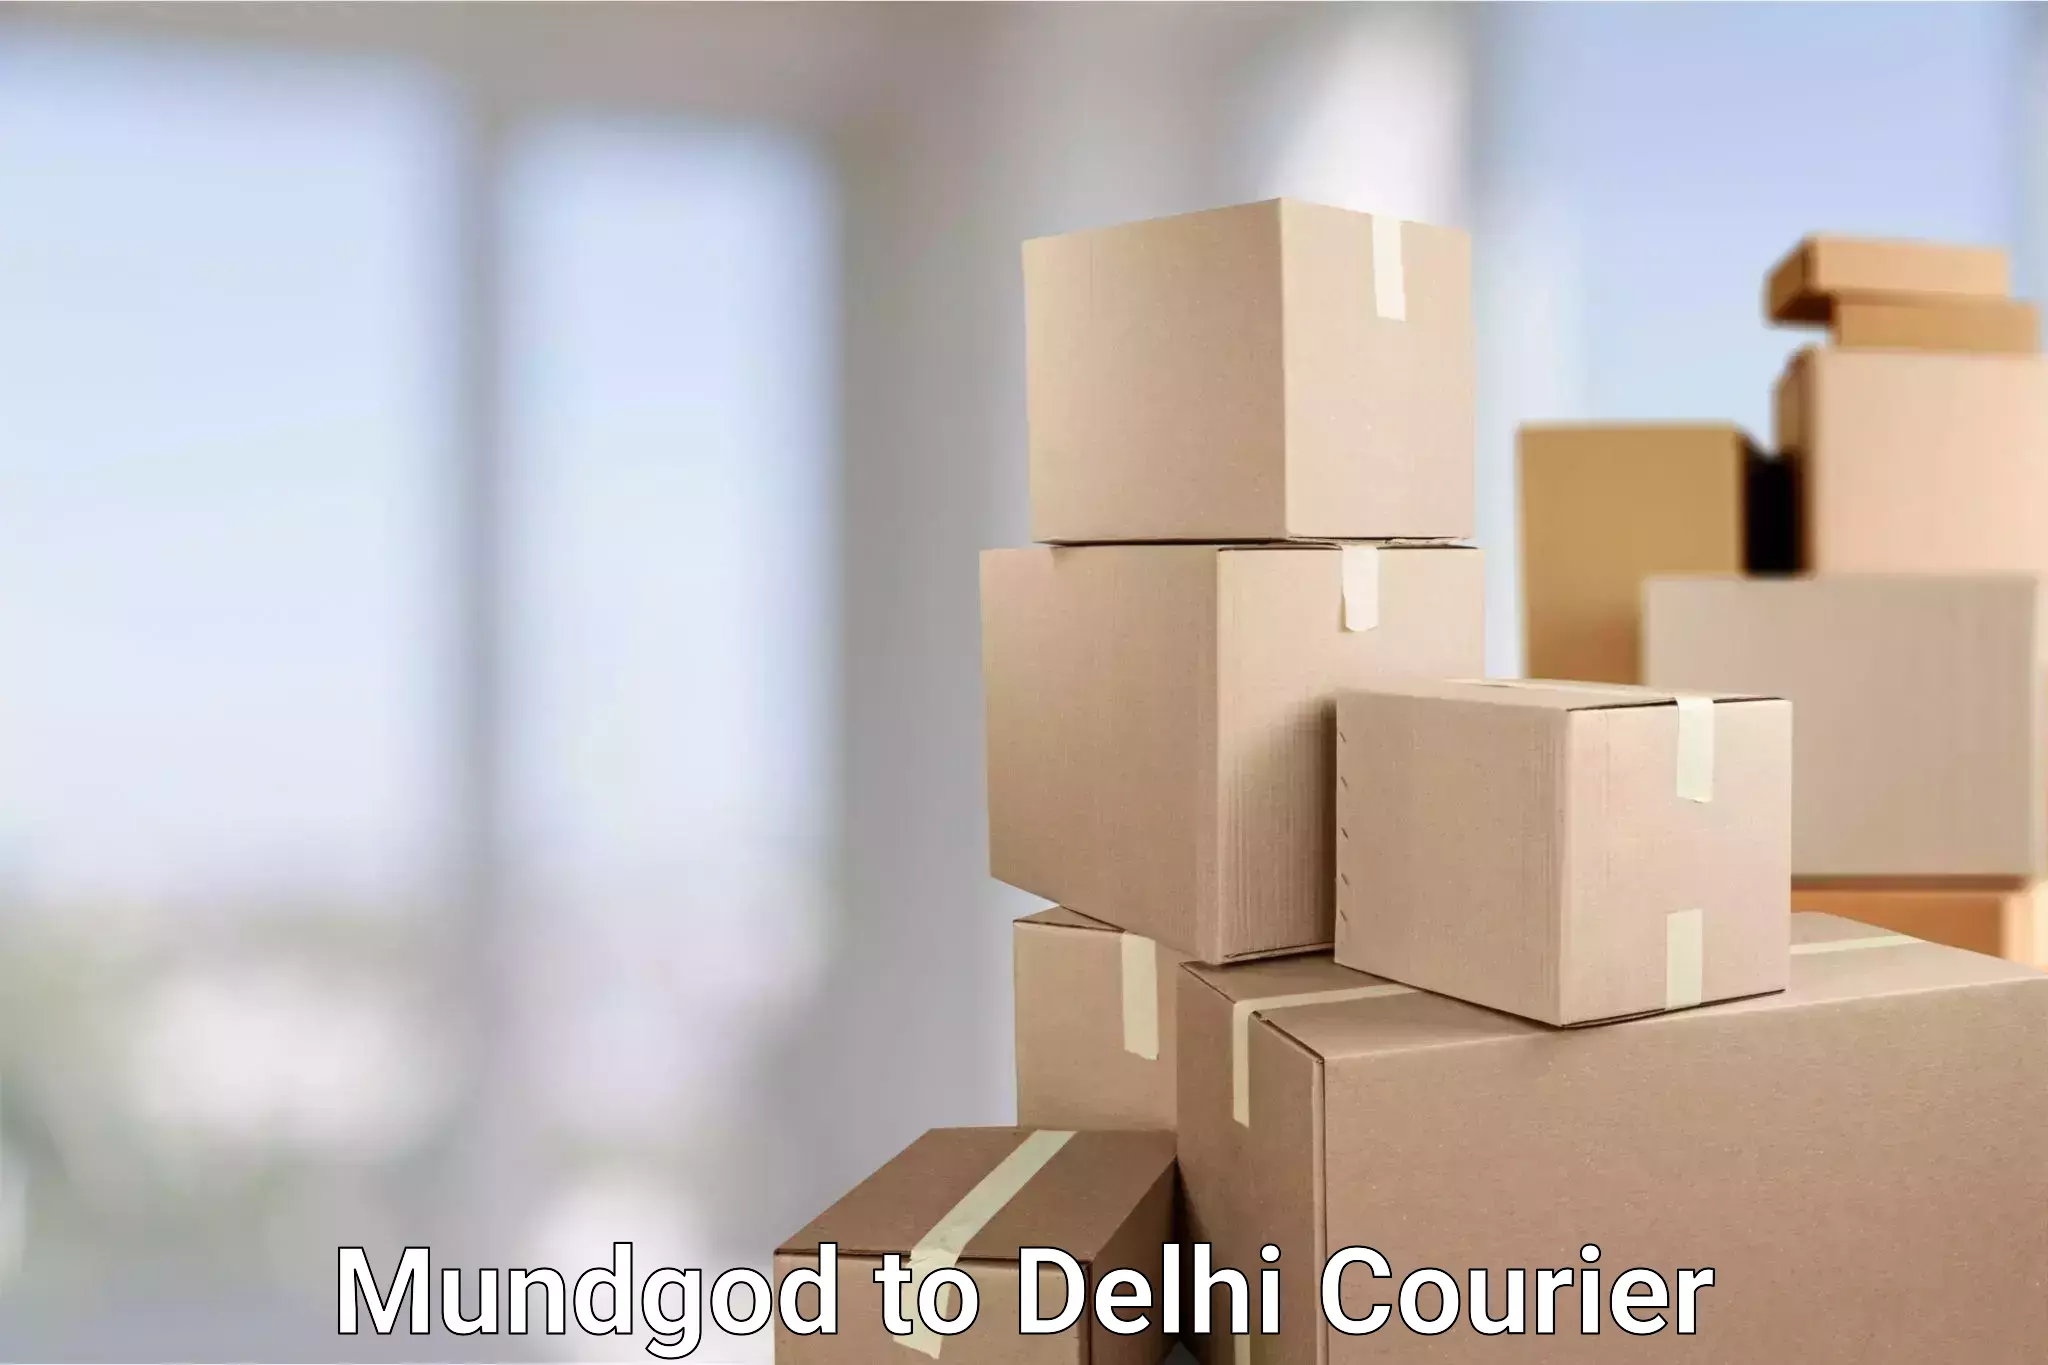 Door-to-door freight service Mundgod to East Delhi